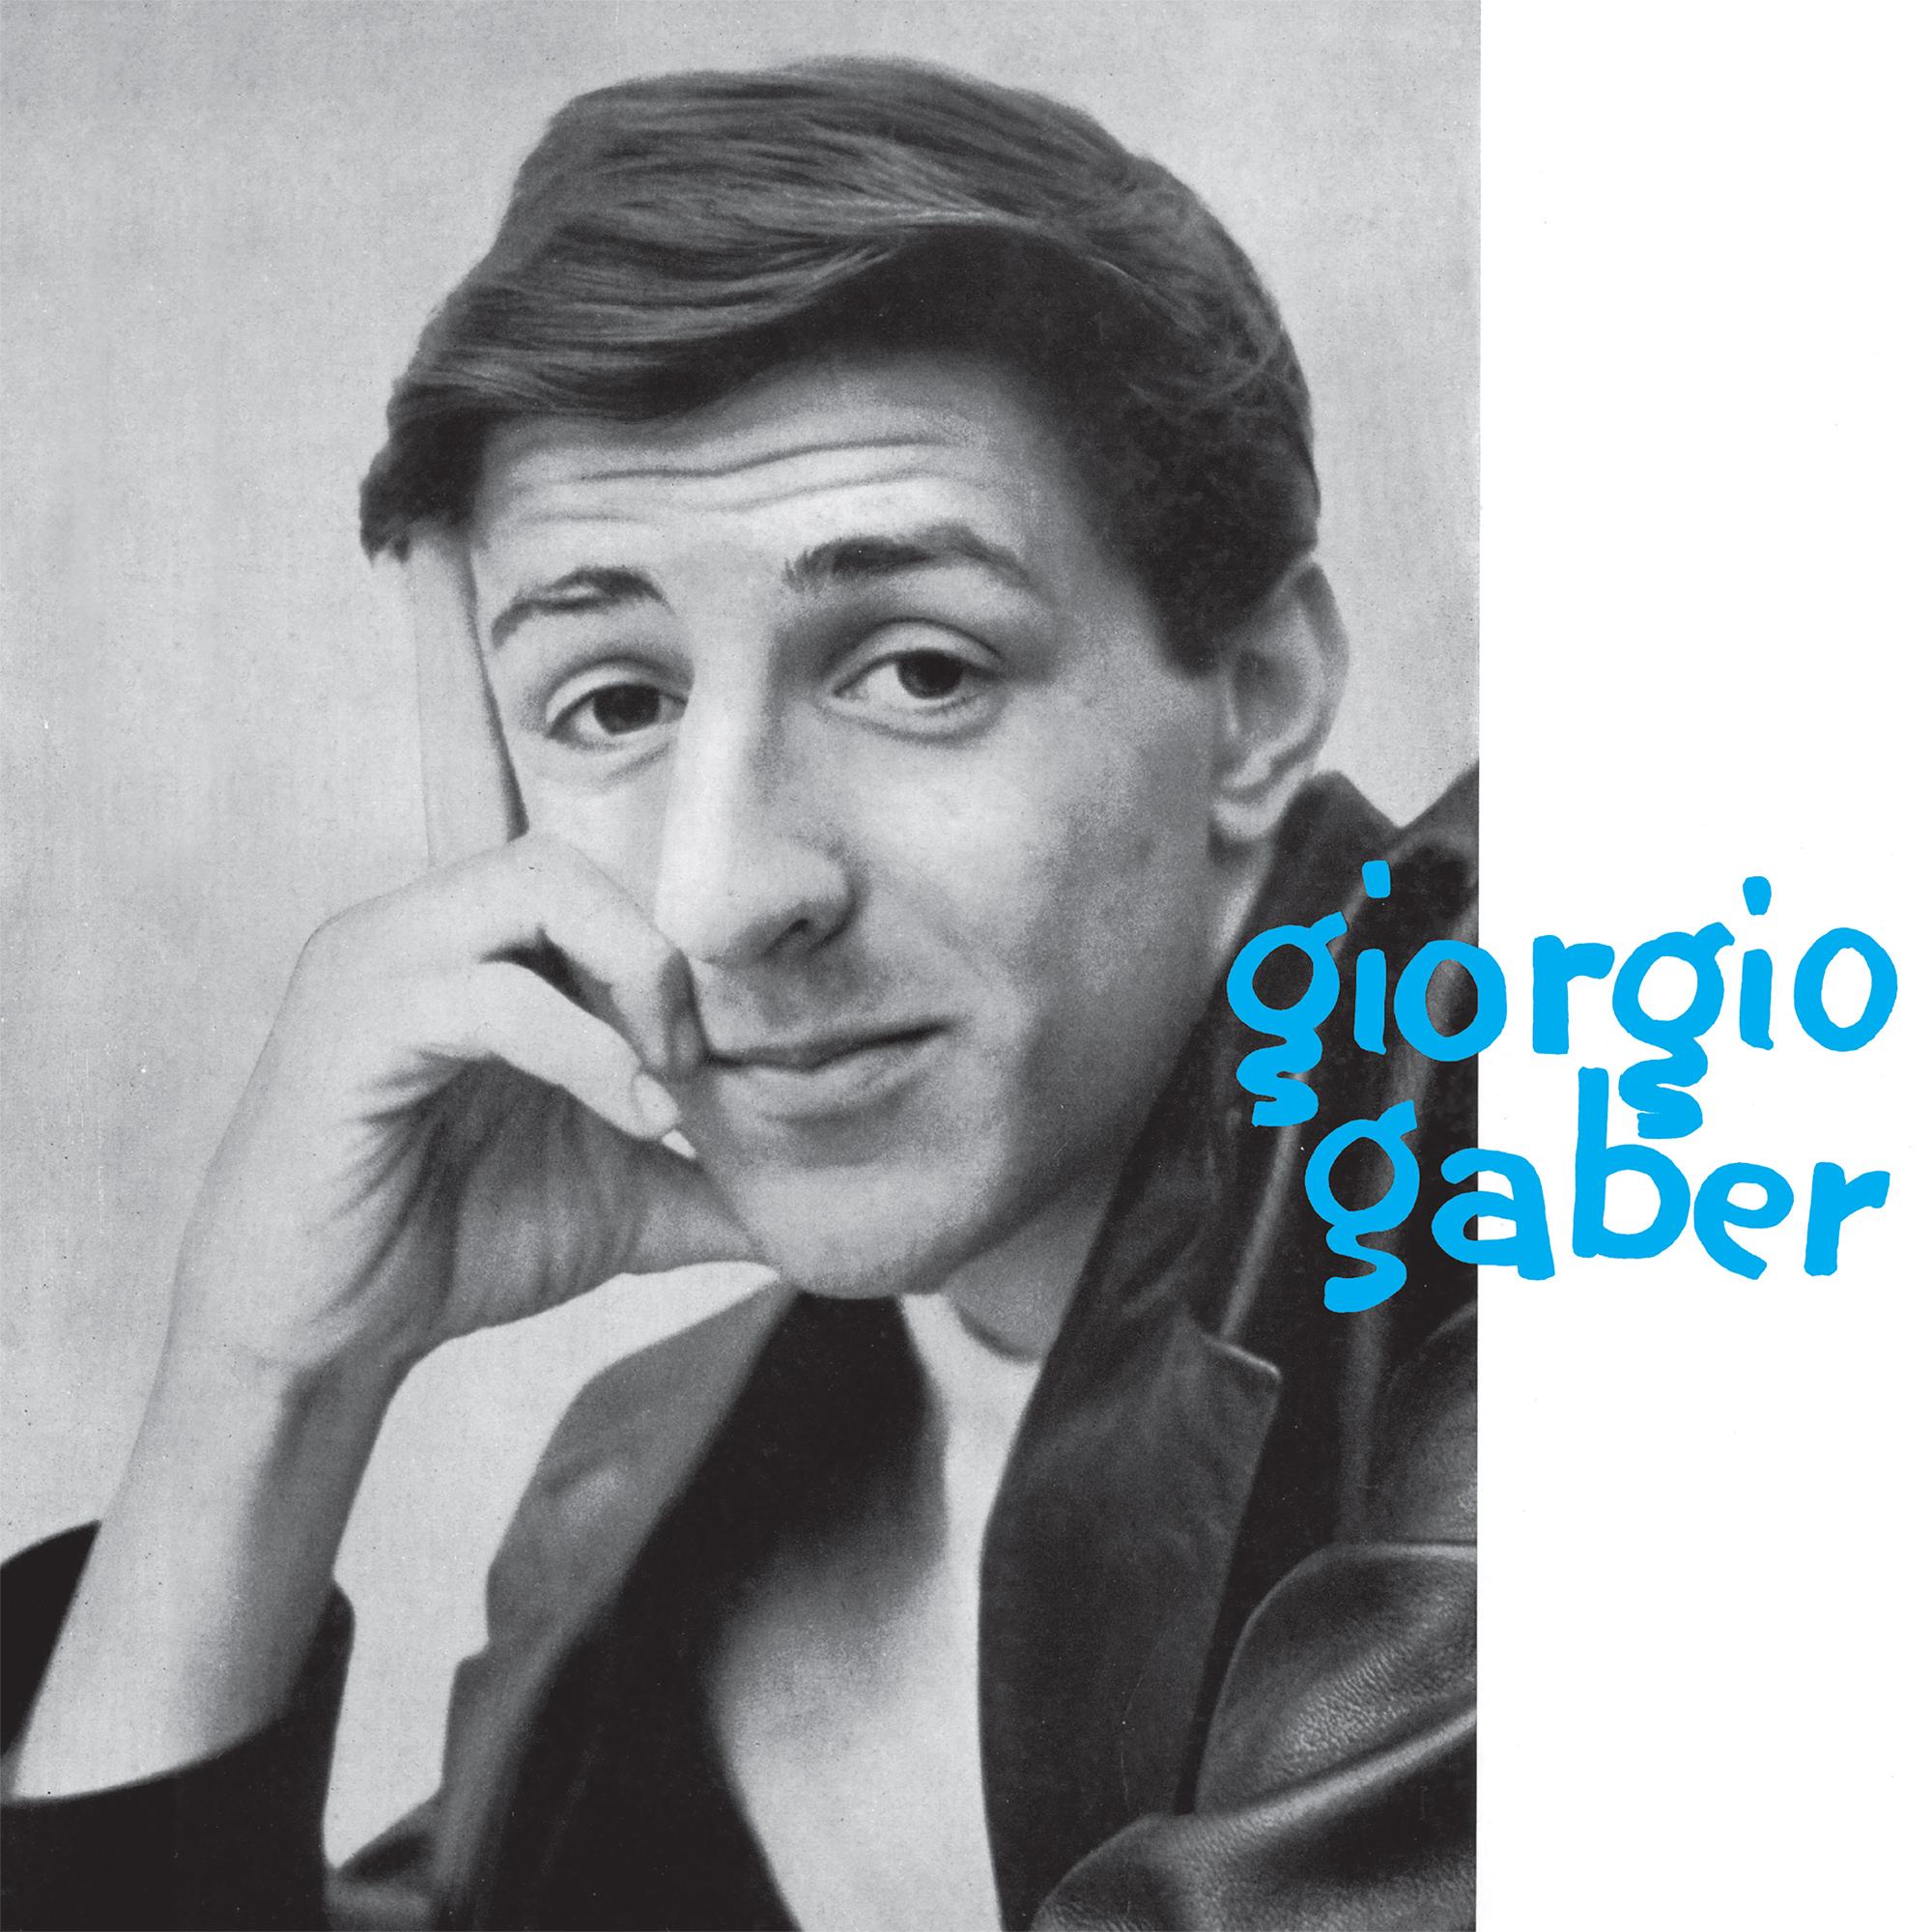 GIORGIO GABER LP 180 GR.